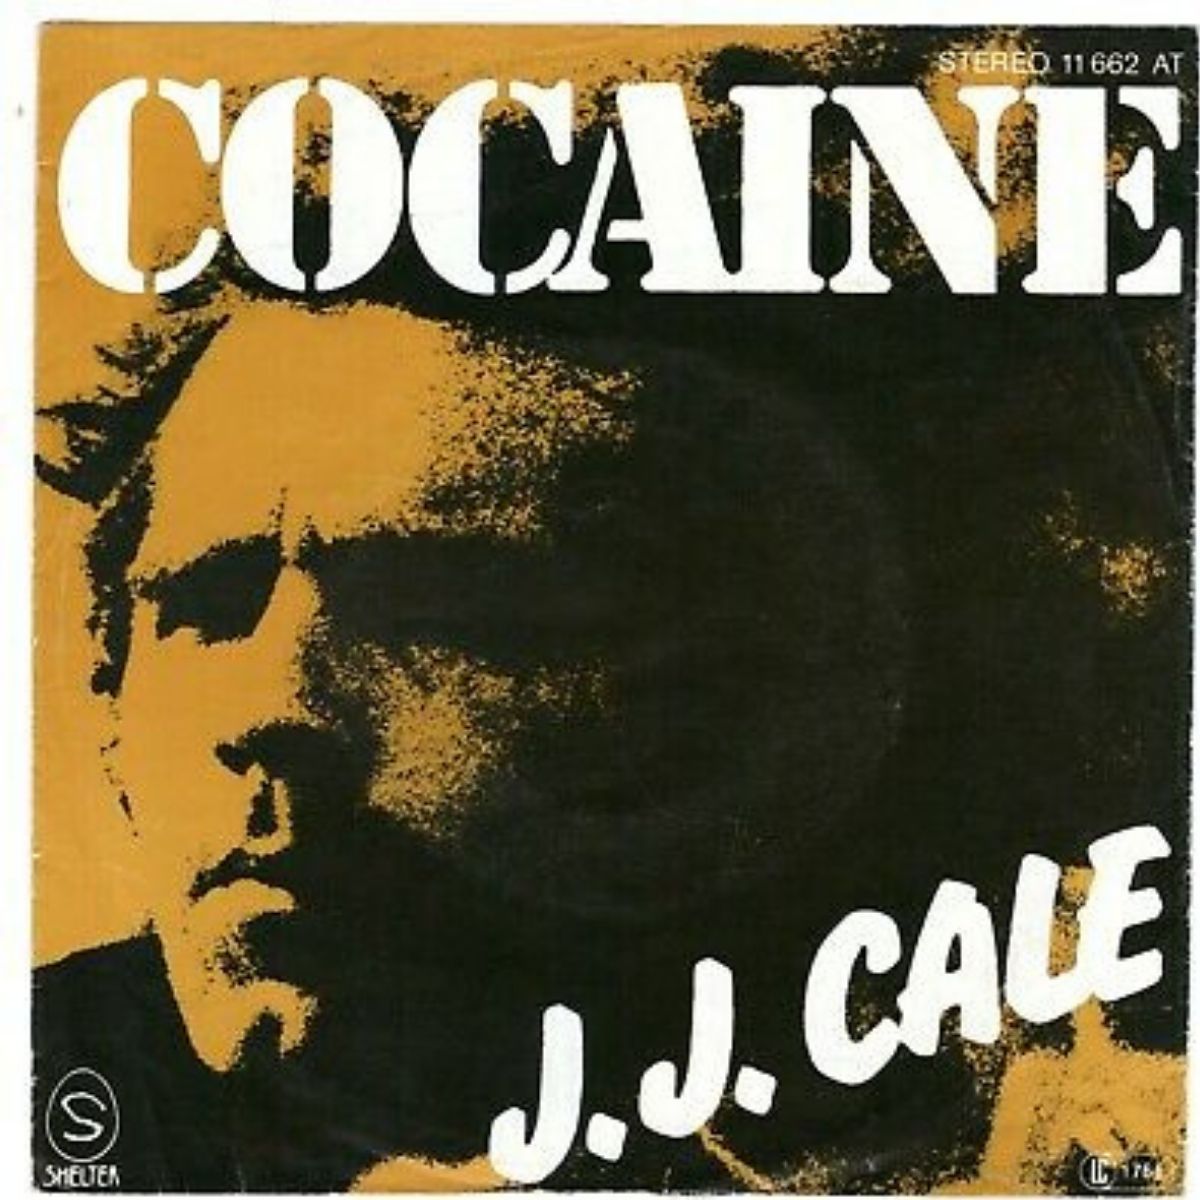 Portada de la canción "Cocaine" de J.J. Cale